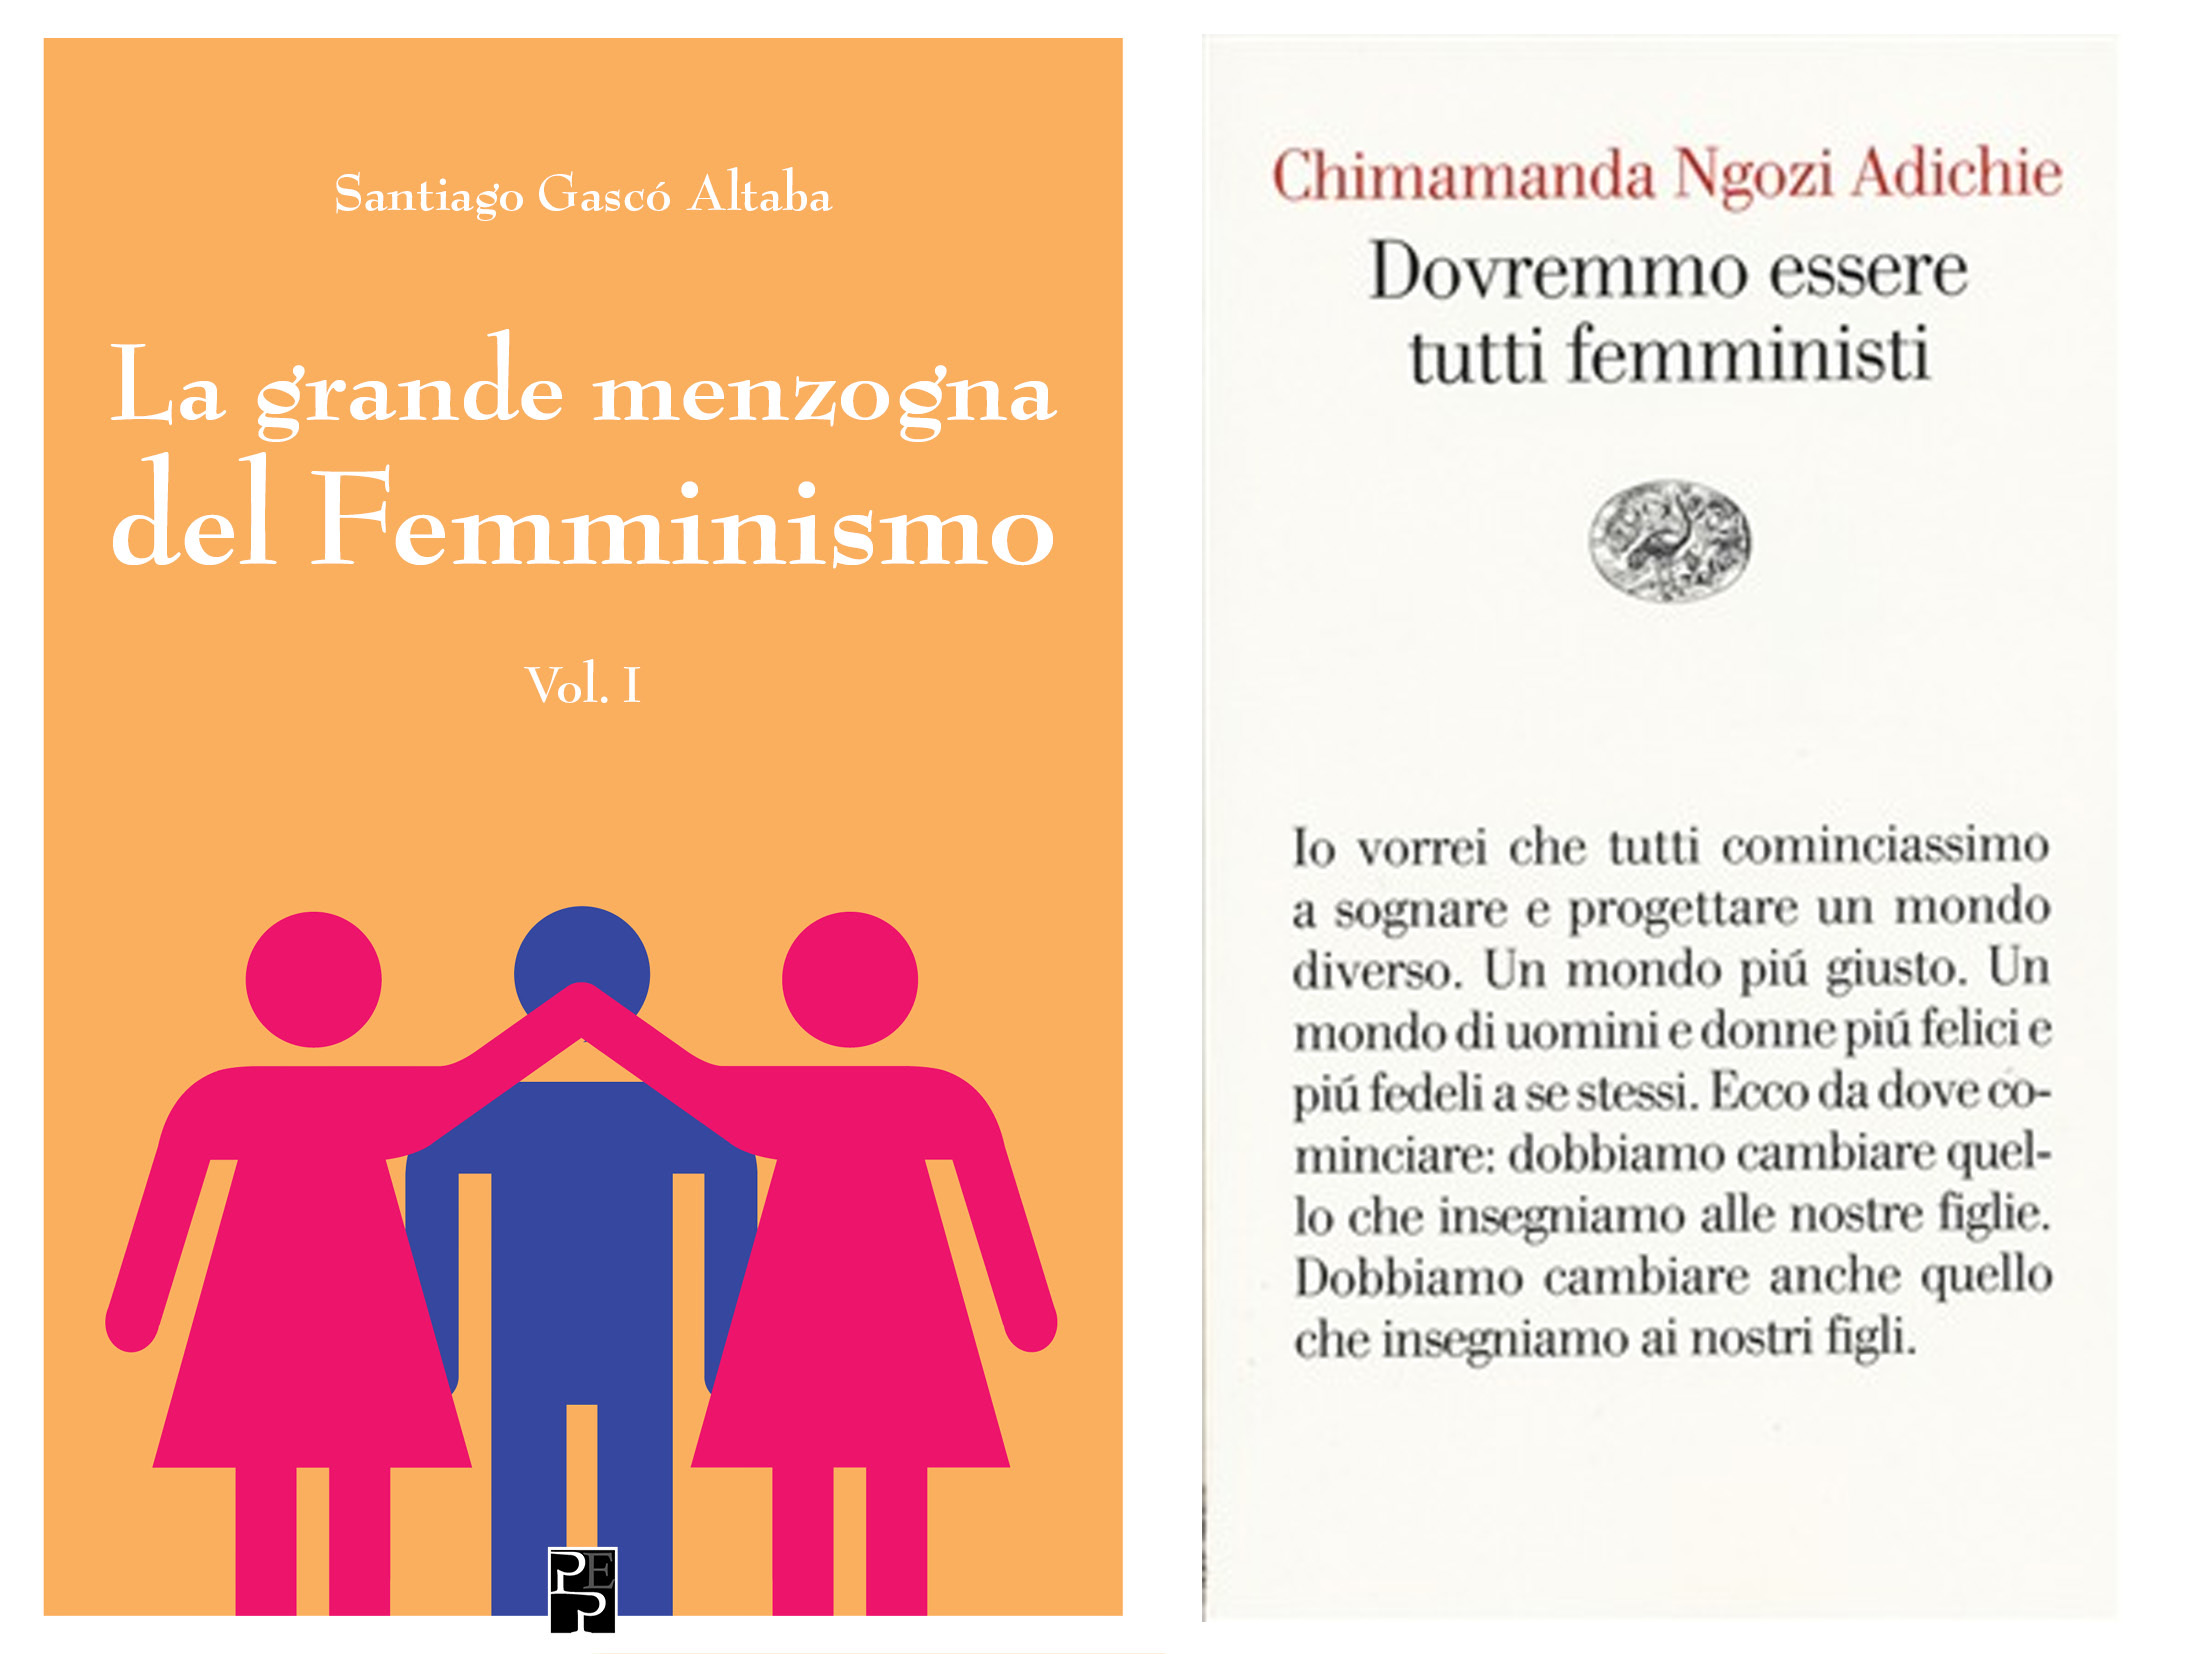 La grande menzogna: due libri a confronto sul Femminismo